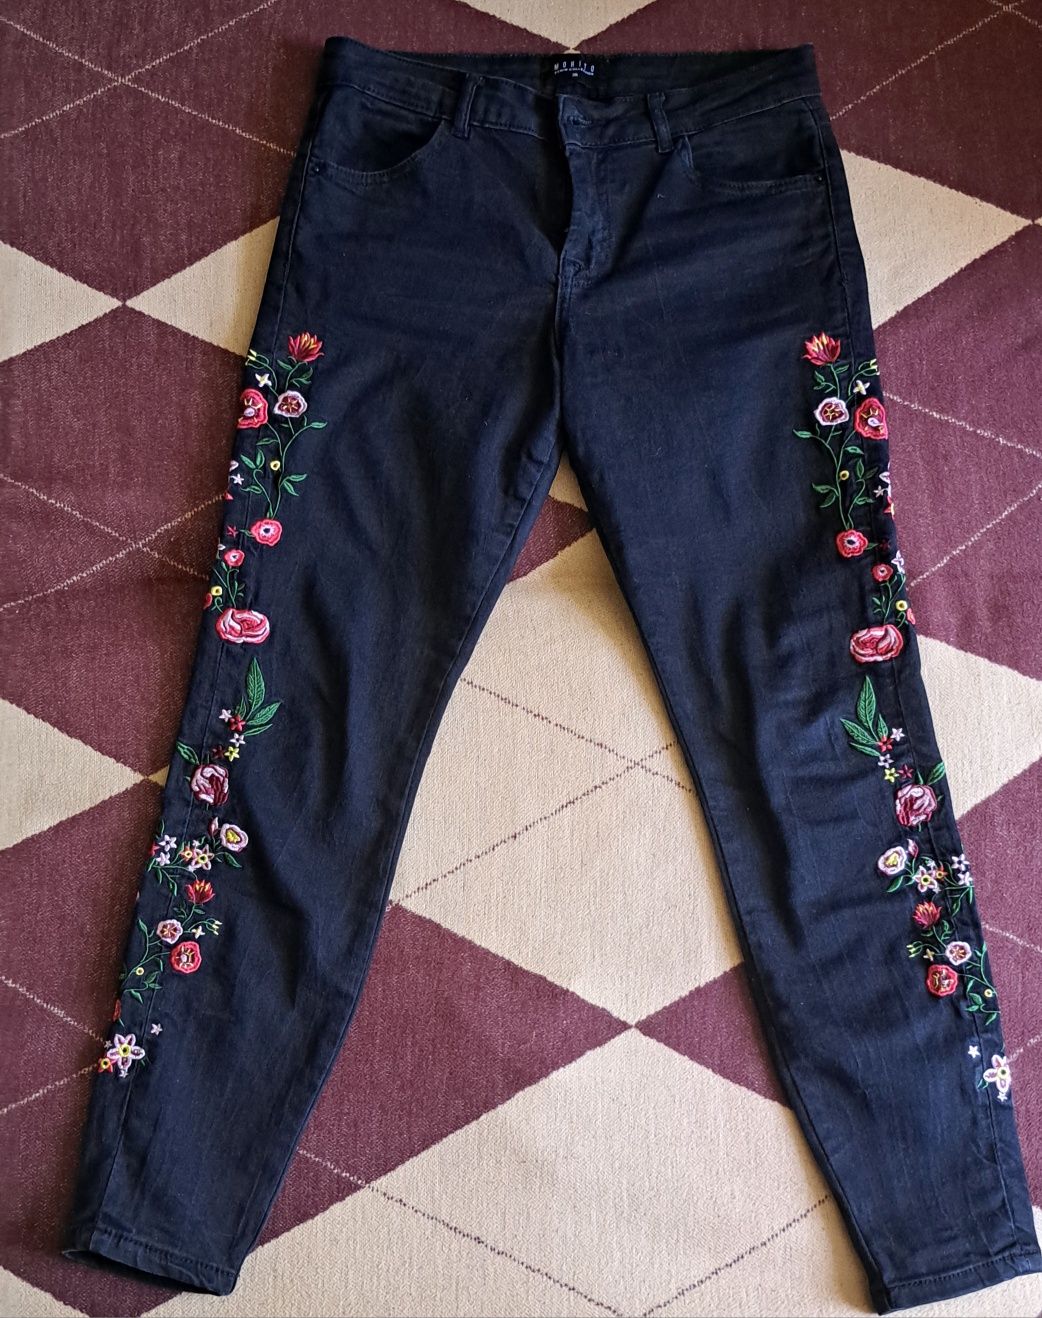 Spodnie damskie z motywem kwiatowym Mohito - 36